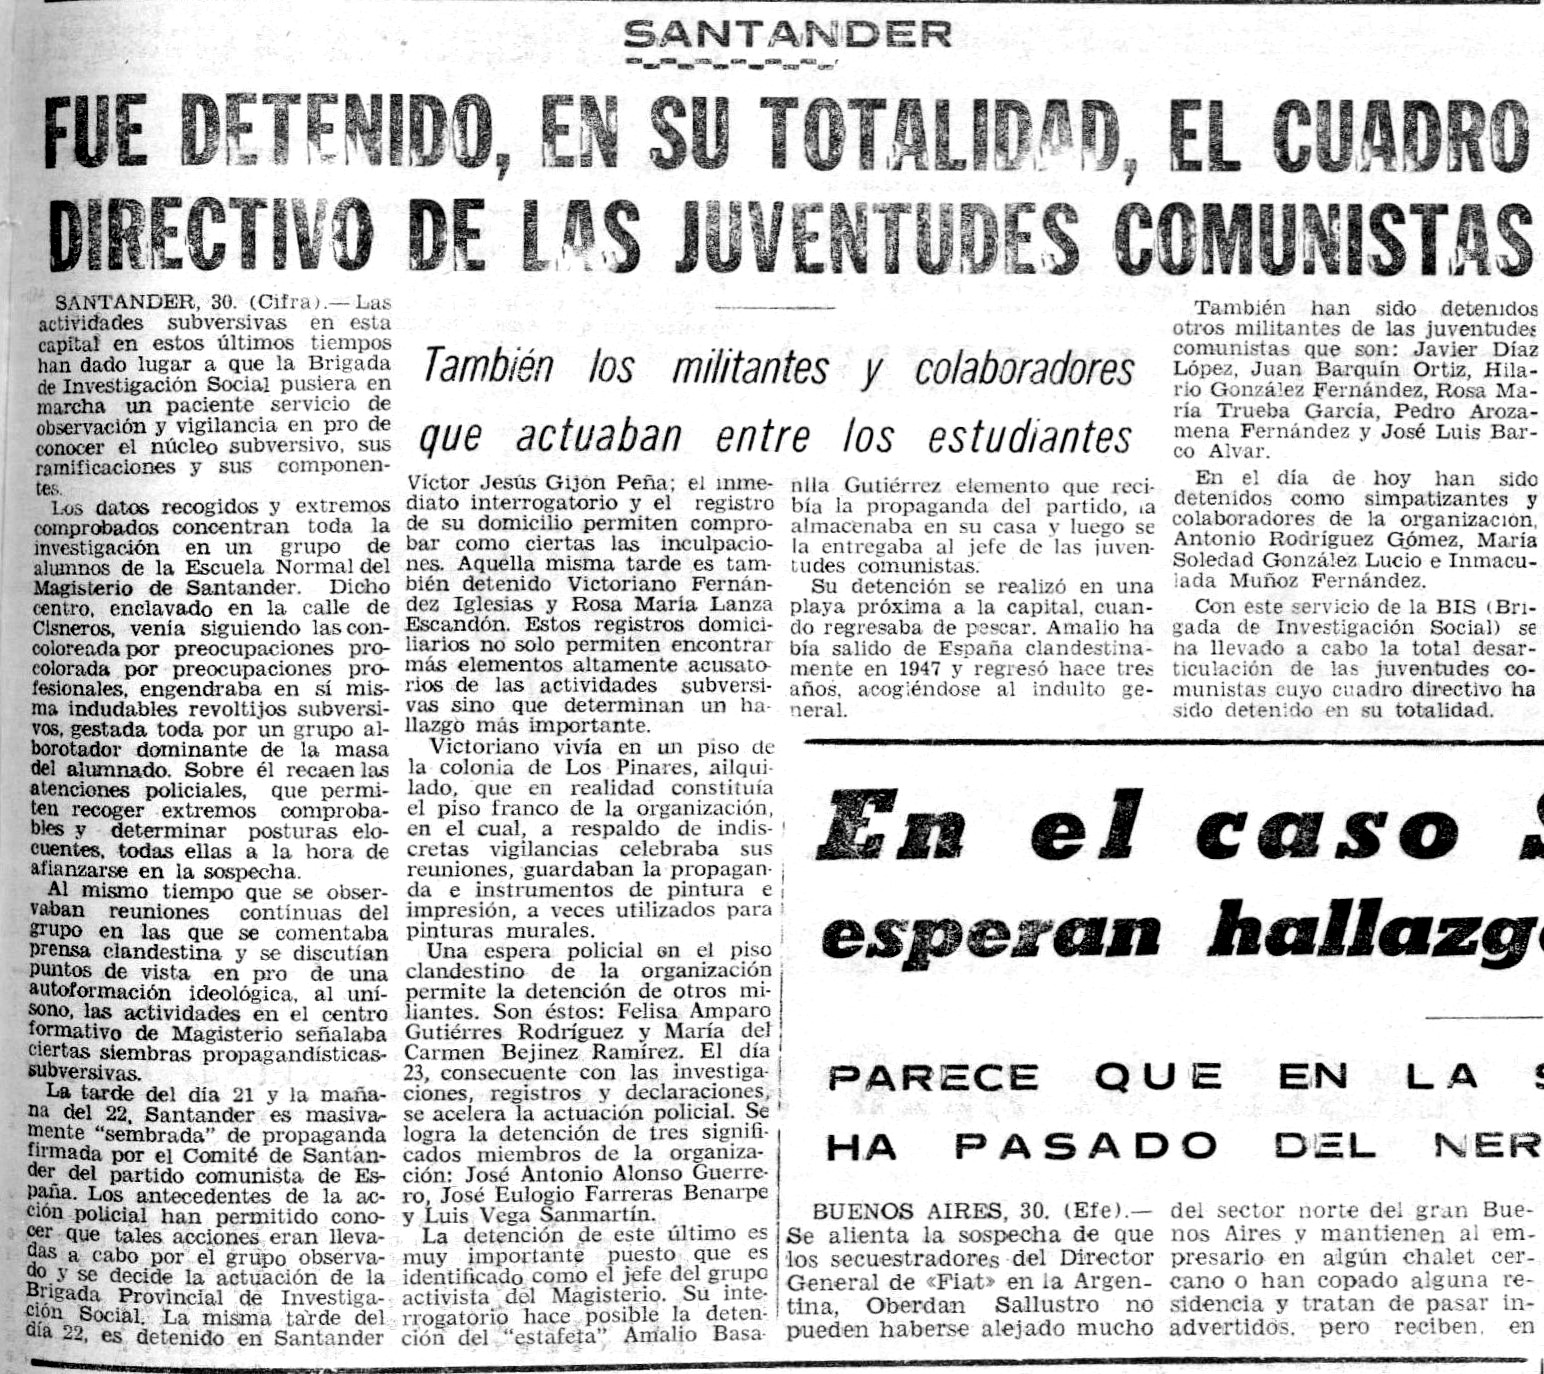 Noticia de la agencia Cifra sobre la detención de estudiantes, dirigentes de las Juventudes Comunistas en Cantabria publicada en el diario Baleares, órgano de Falange Española, el 31 de marzo de 1972.